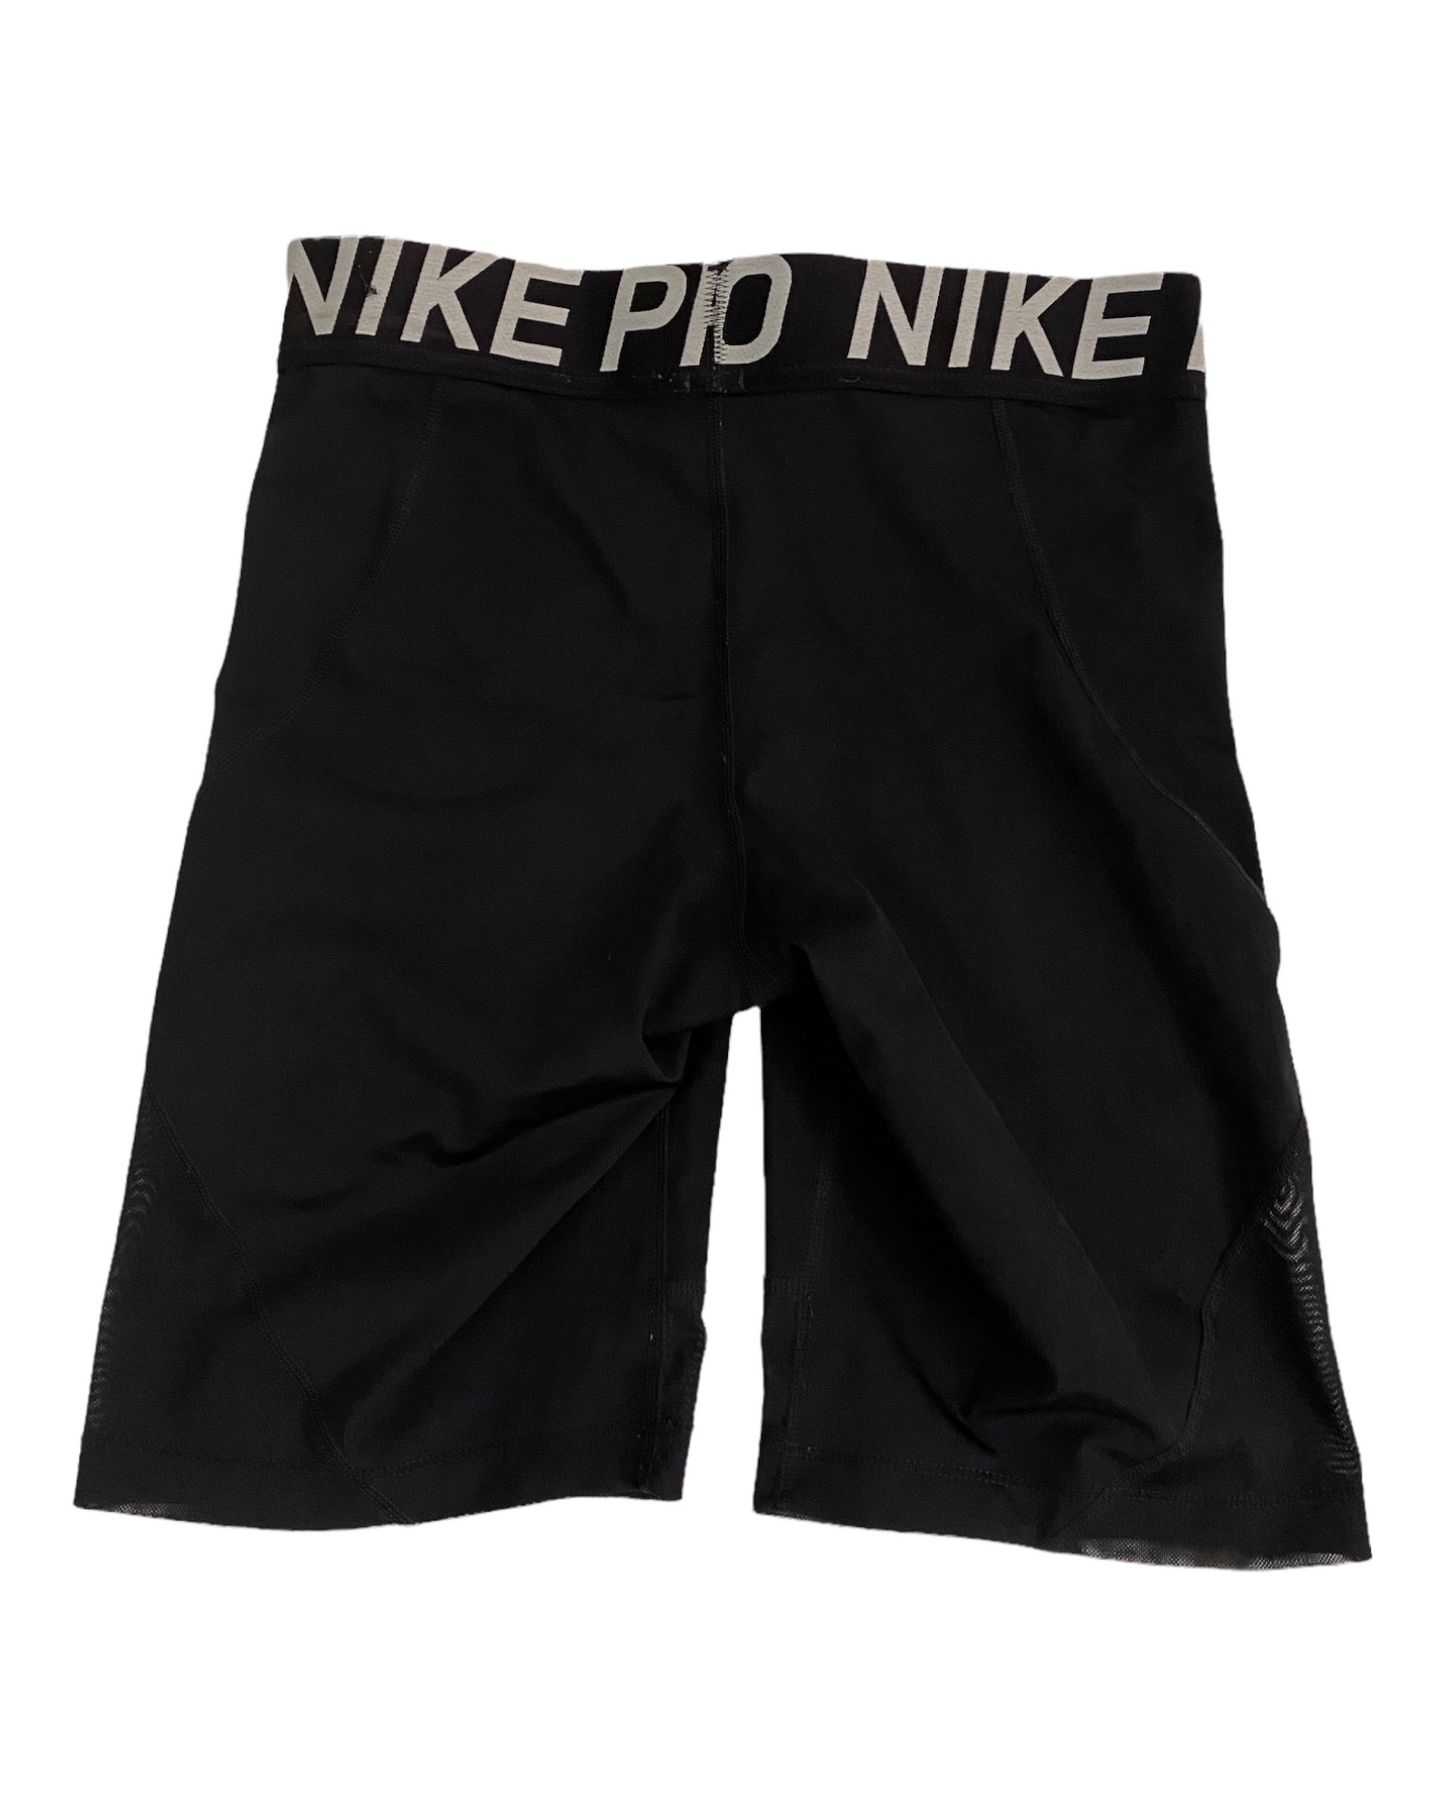 Nike Pro Biker Shorts